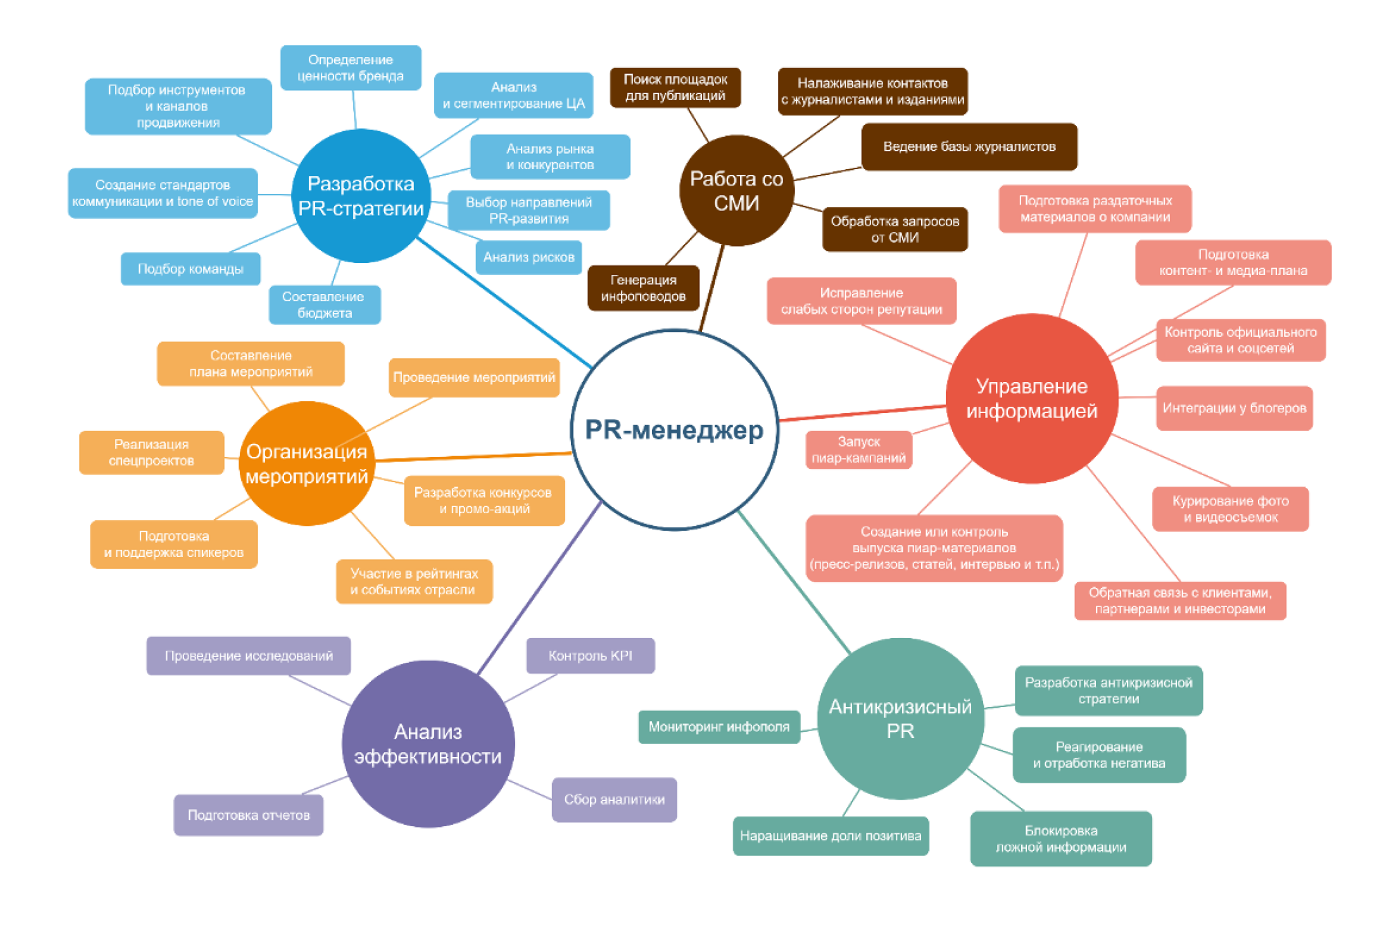 Карта обязанностей PR-менеджера, составленная на основе вакансий, размещенных на портале HH.ru